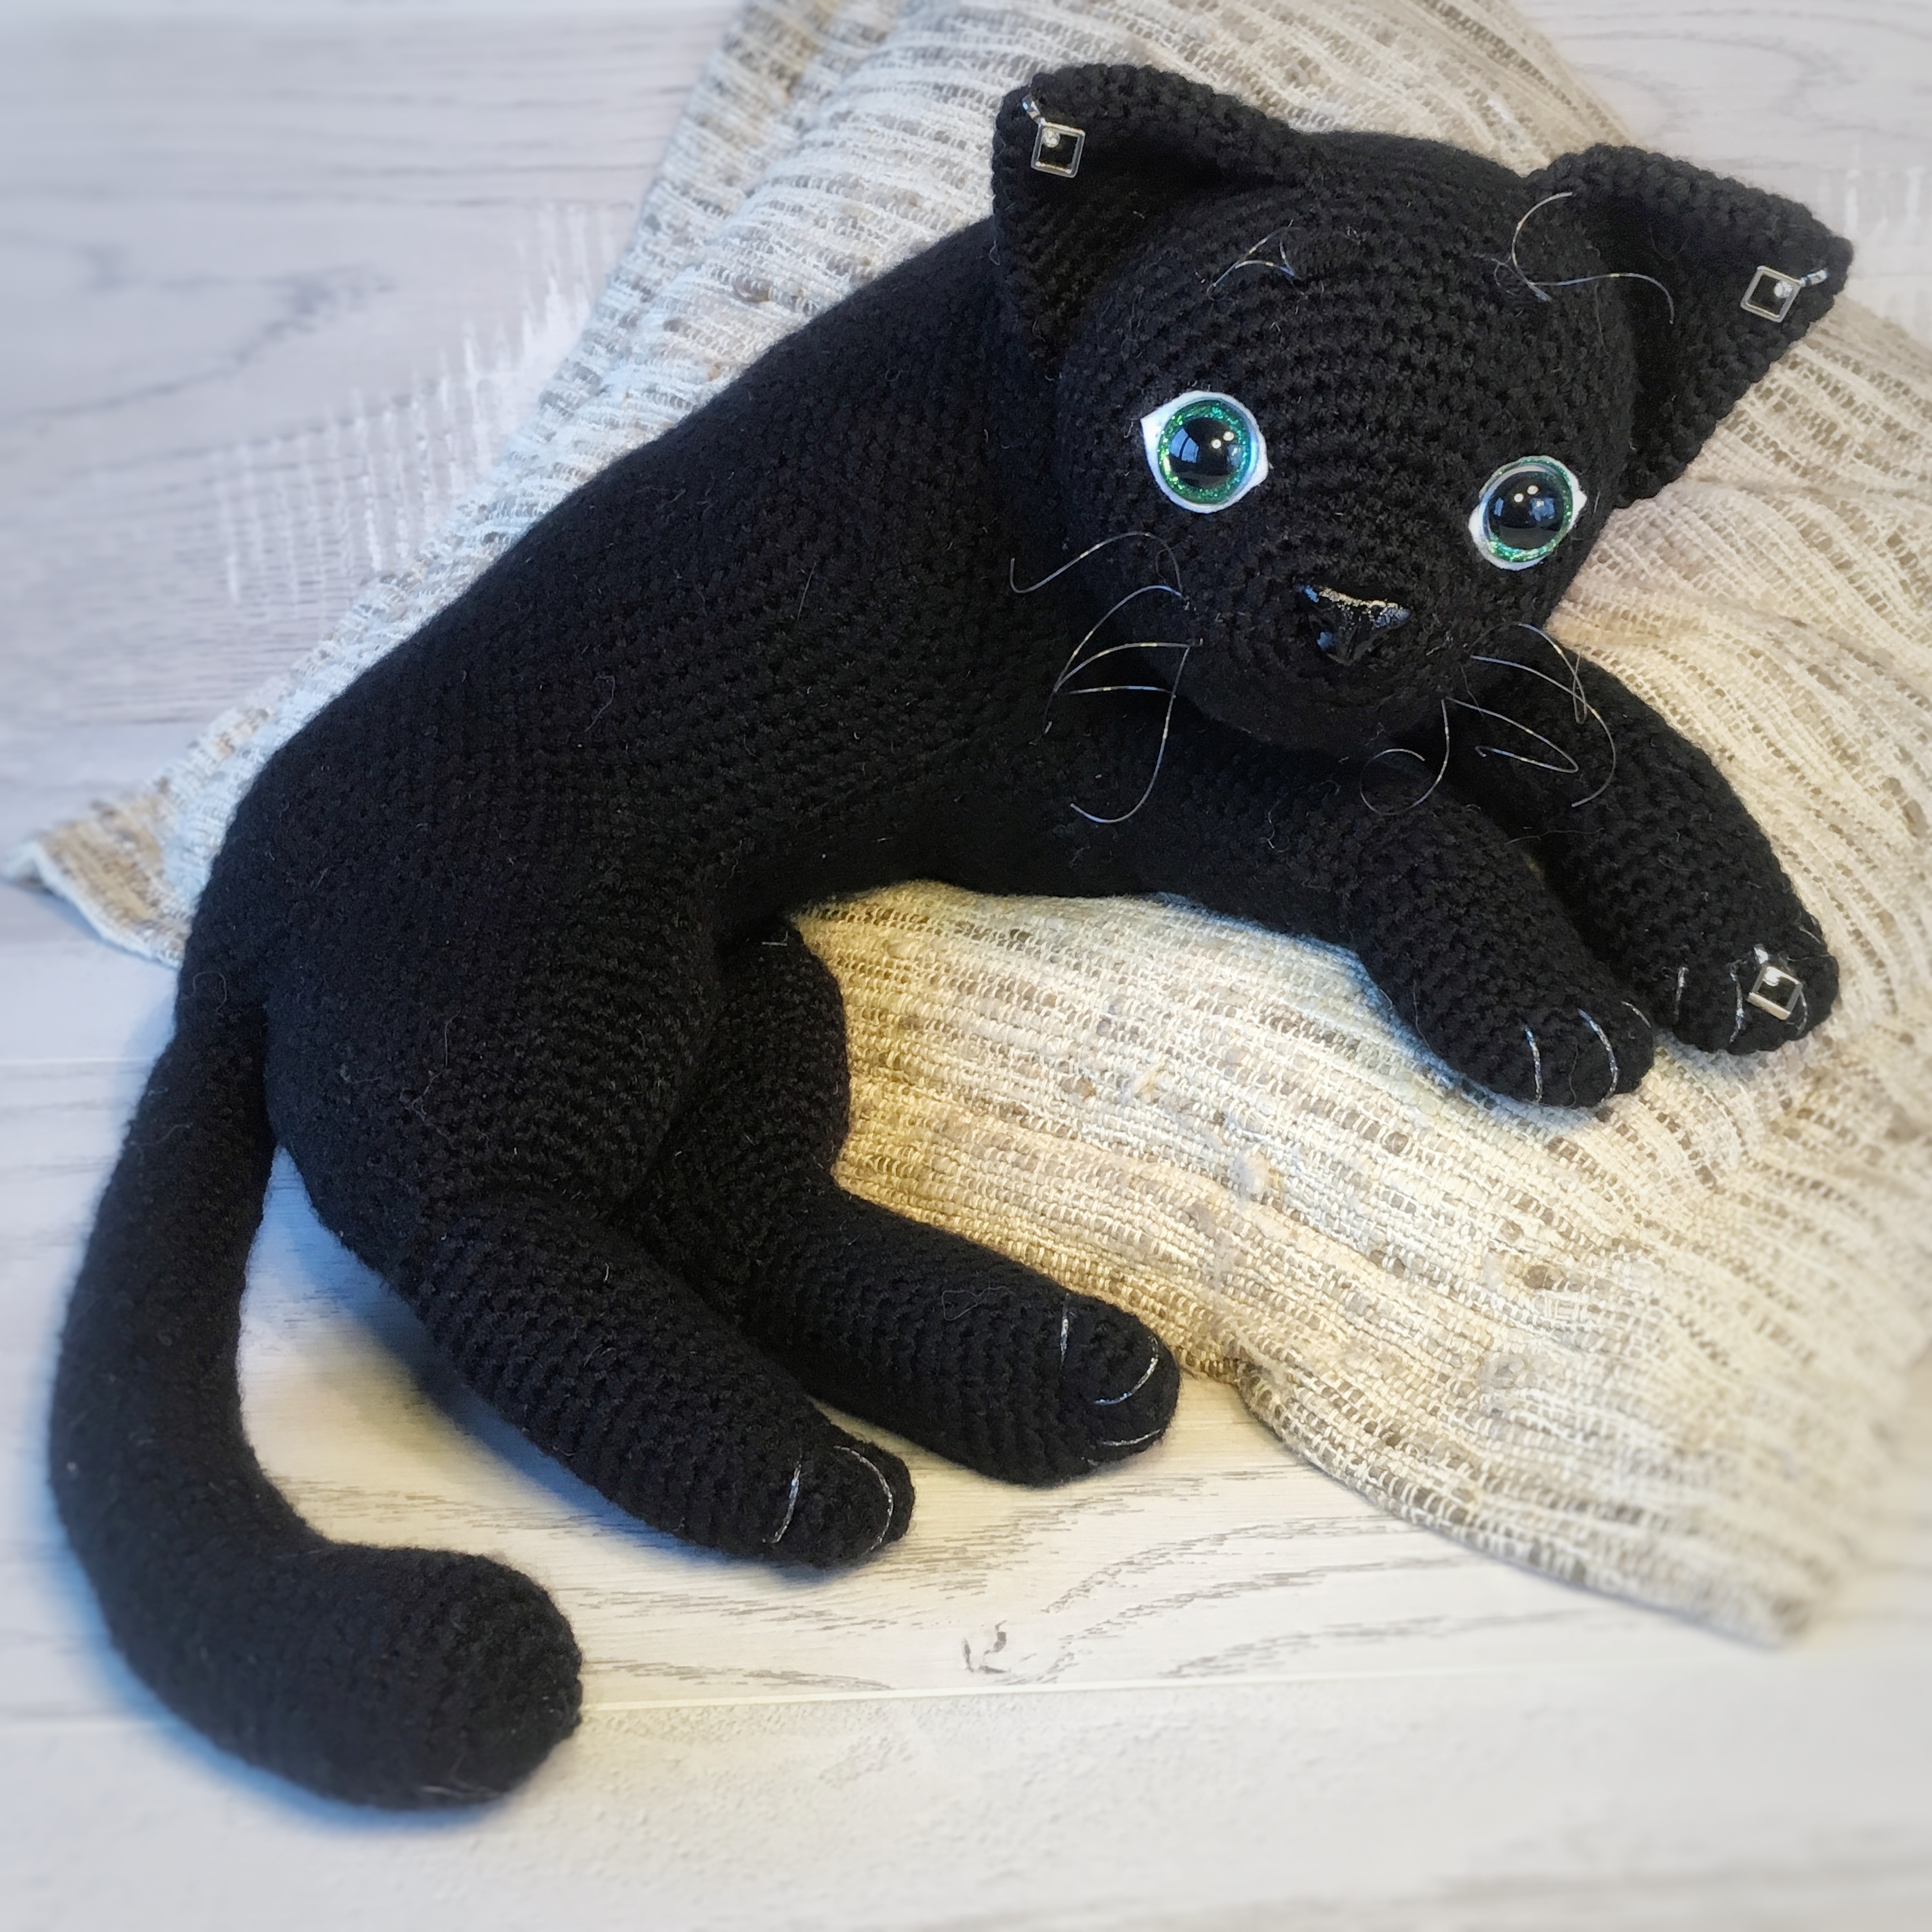 crochet-pattern-curled-up-cat-monoxa